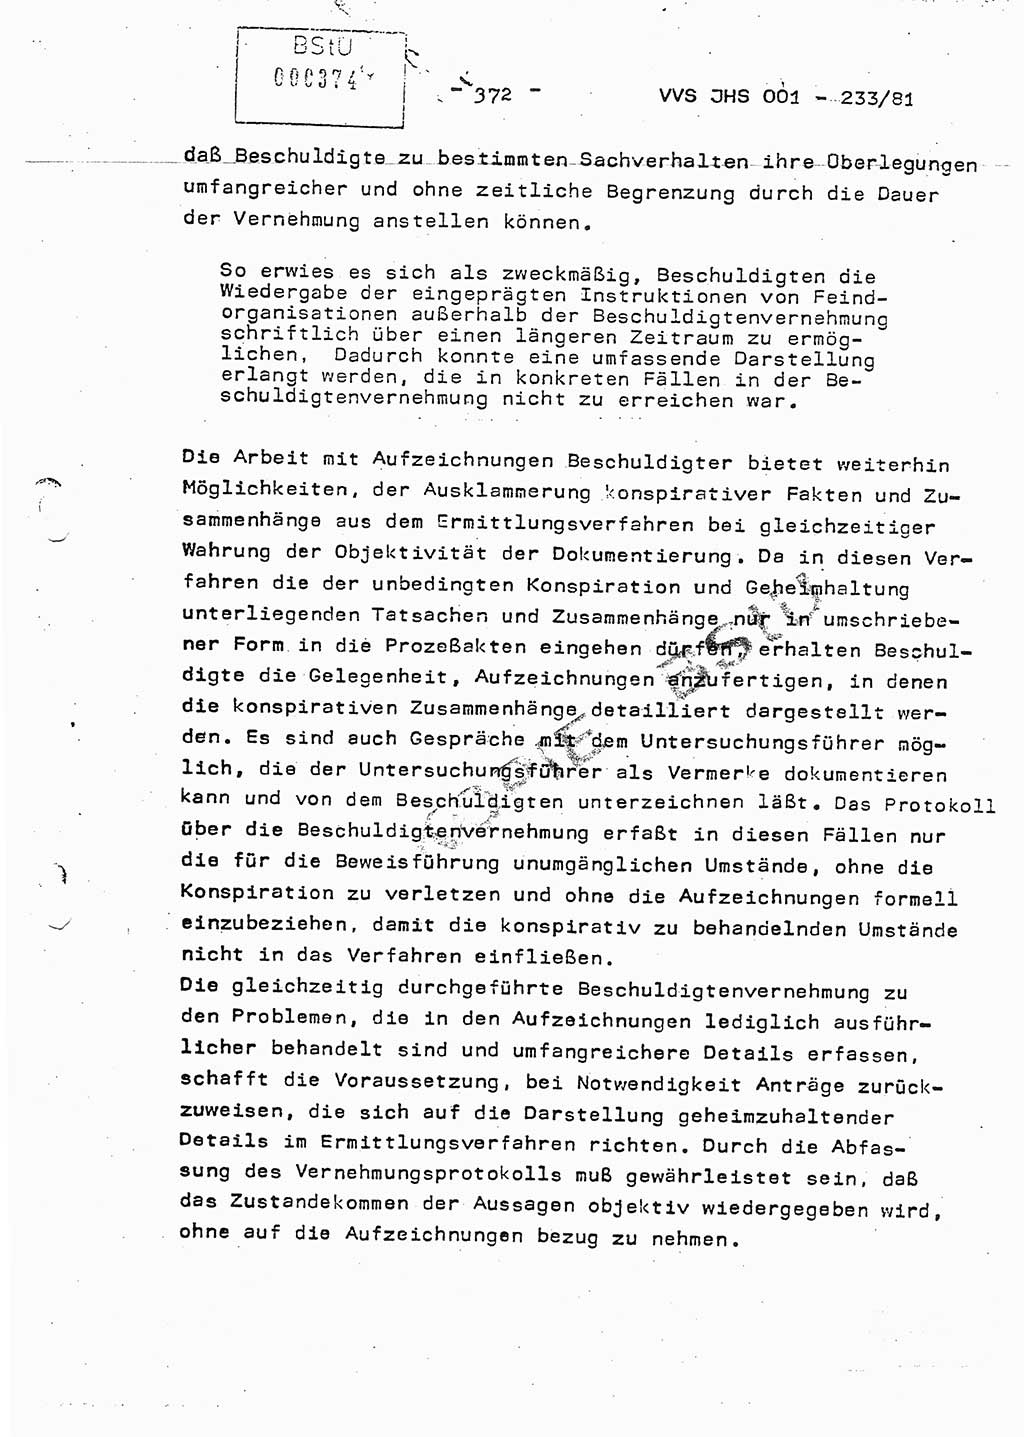 Dissertation Oberstleutnant Horst Zank (JHS), Oberstleutnant Dr. Karl-Heinz Knoblauch (JHS), Oberstleutnant Gustav-Adolf Kowalewski (HA Ⅸ), Oberstleutnant Wolfgang Plötner (HA Ⅸ), Ministerium für Staatssicherheit (MfS) [Deutsche Demokratische Republik (DDR)], Juristische Hochschule (JHS), Vertrauliche Verschlußsache (VVS) o001-233/81, Potsdam 1981, Blatt 372 (Diss. MfS DDR JHS VVS o001-233/81 1981, Bl. 372)